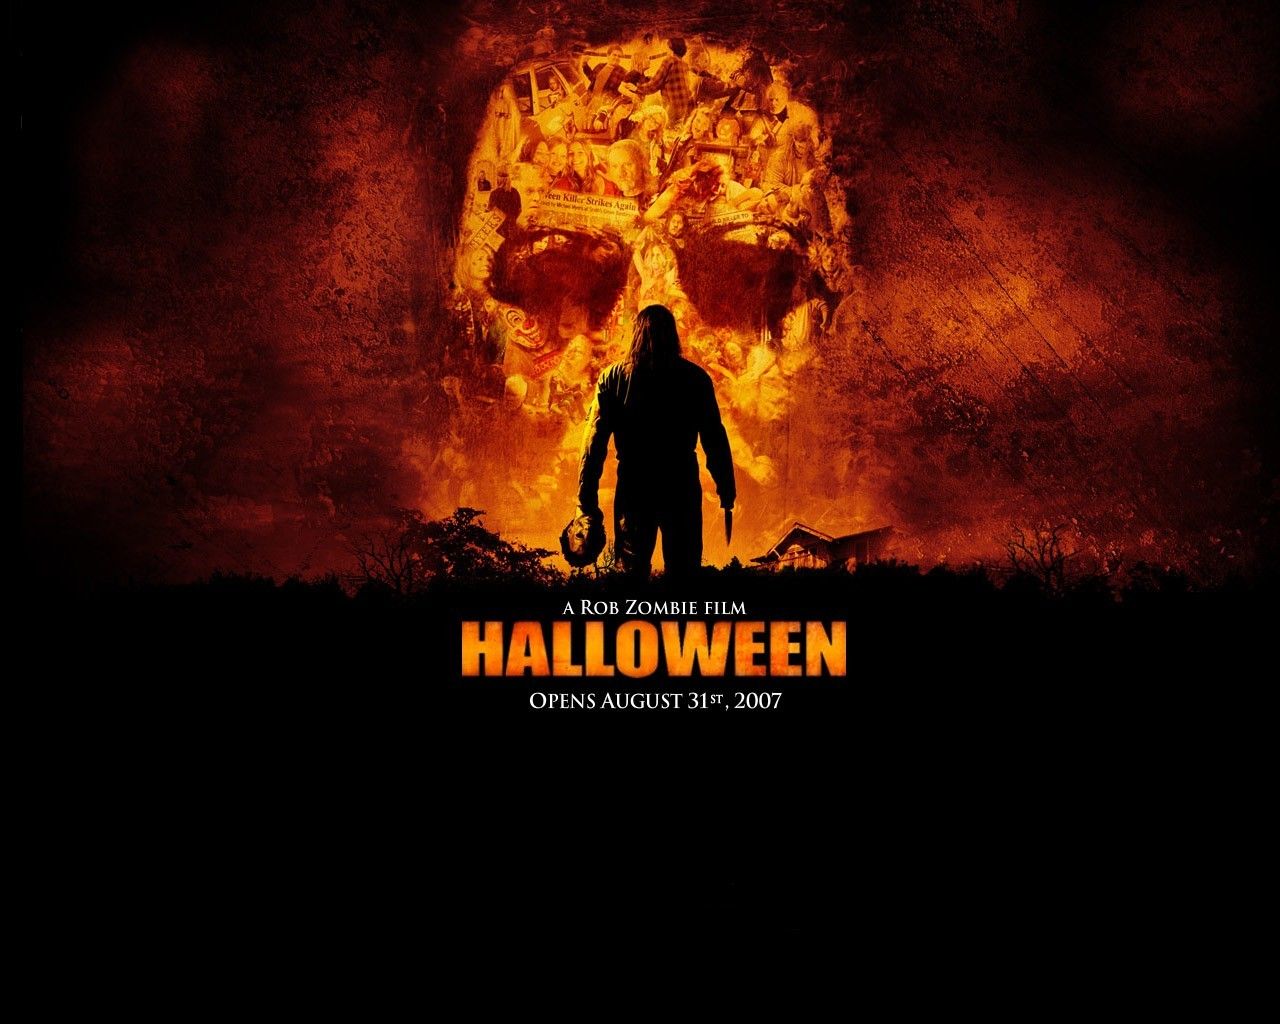 Desktop Wallpapers - Halloween - Movie | Free Desktop Backgrounds ...